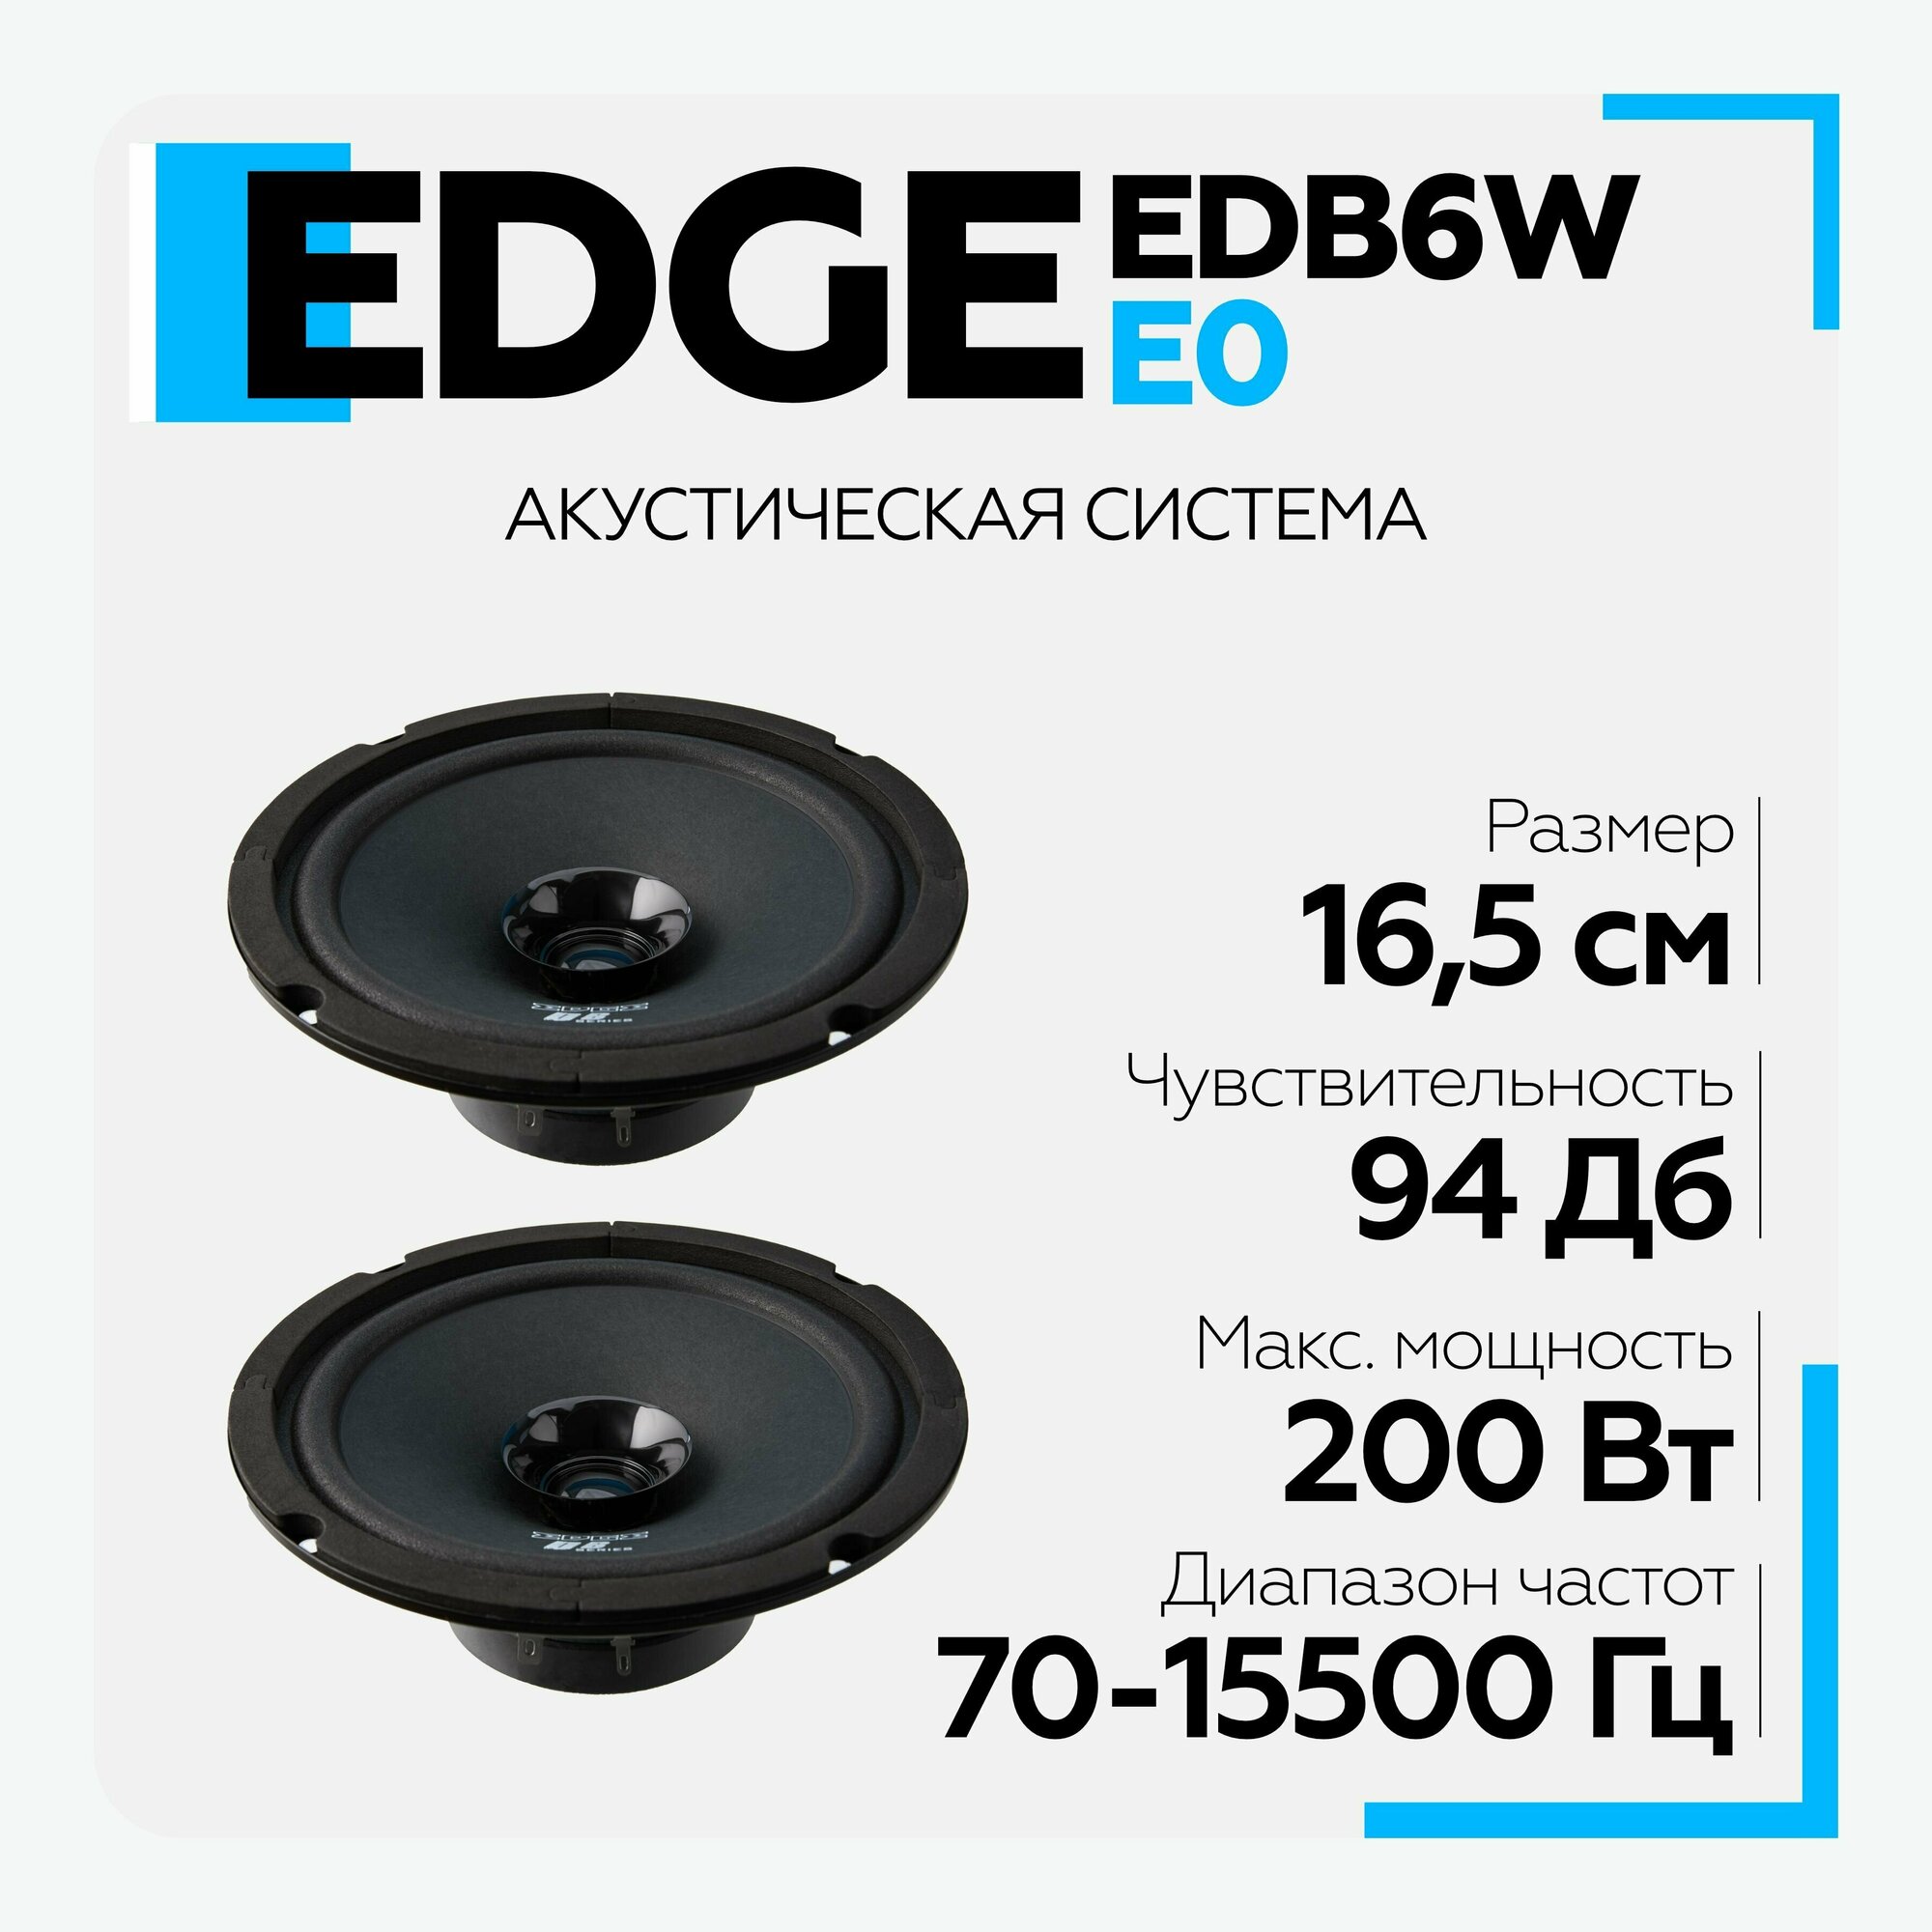 Акустическая система EDGE EDB6W-E0 Динамики широкополосная